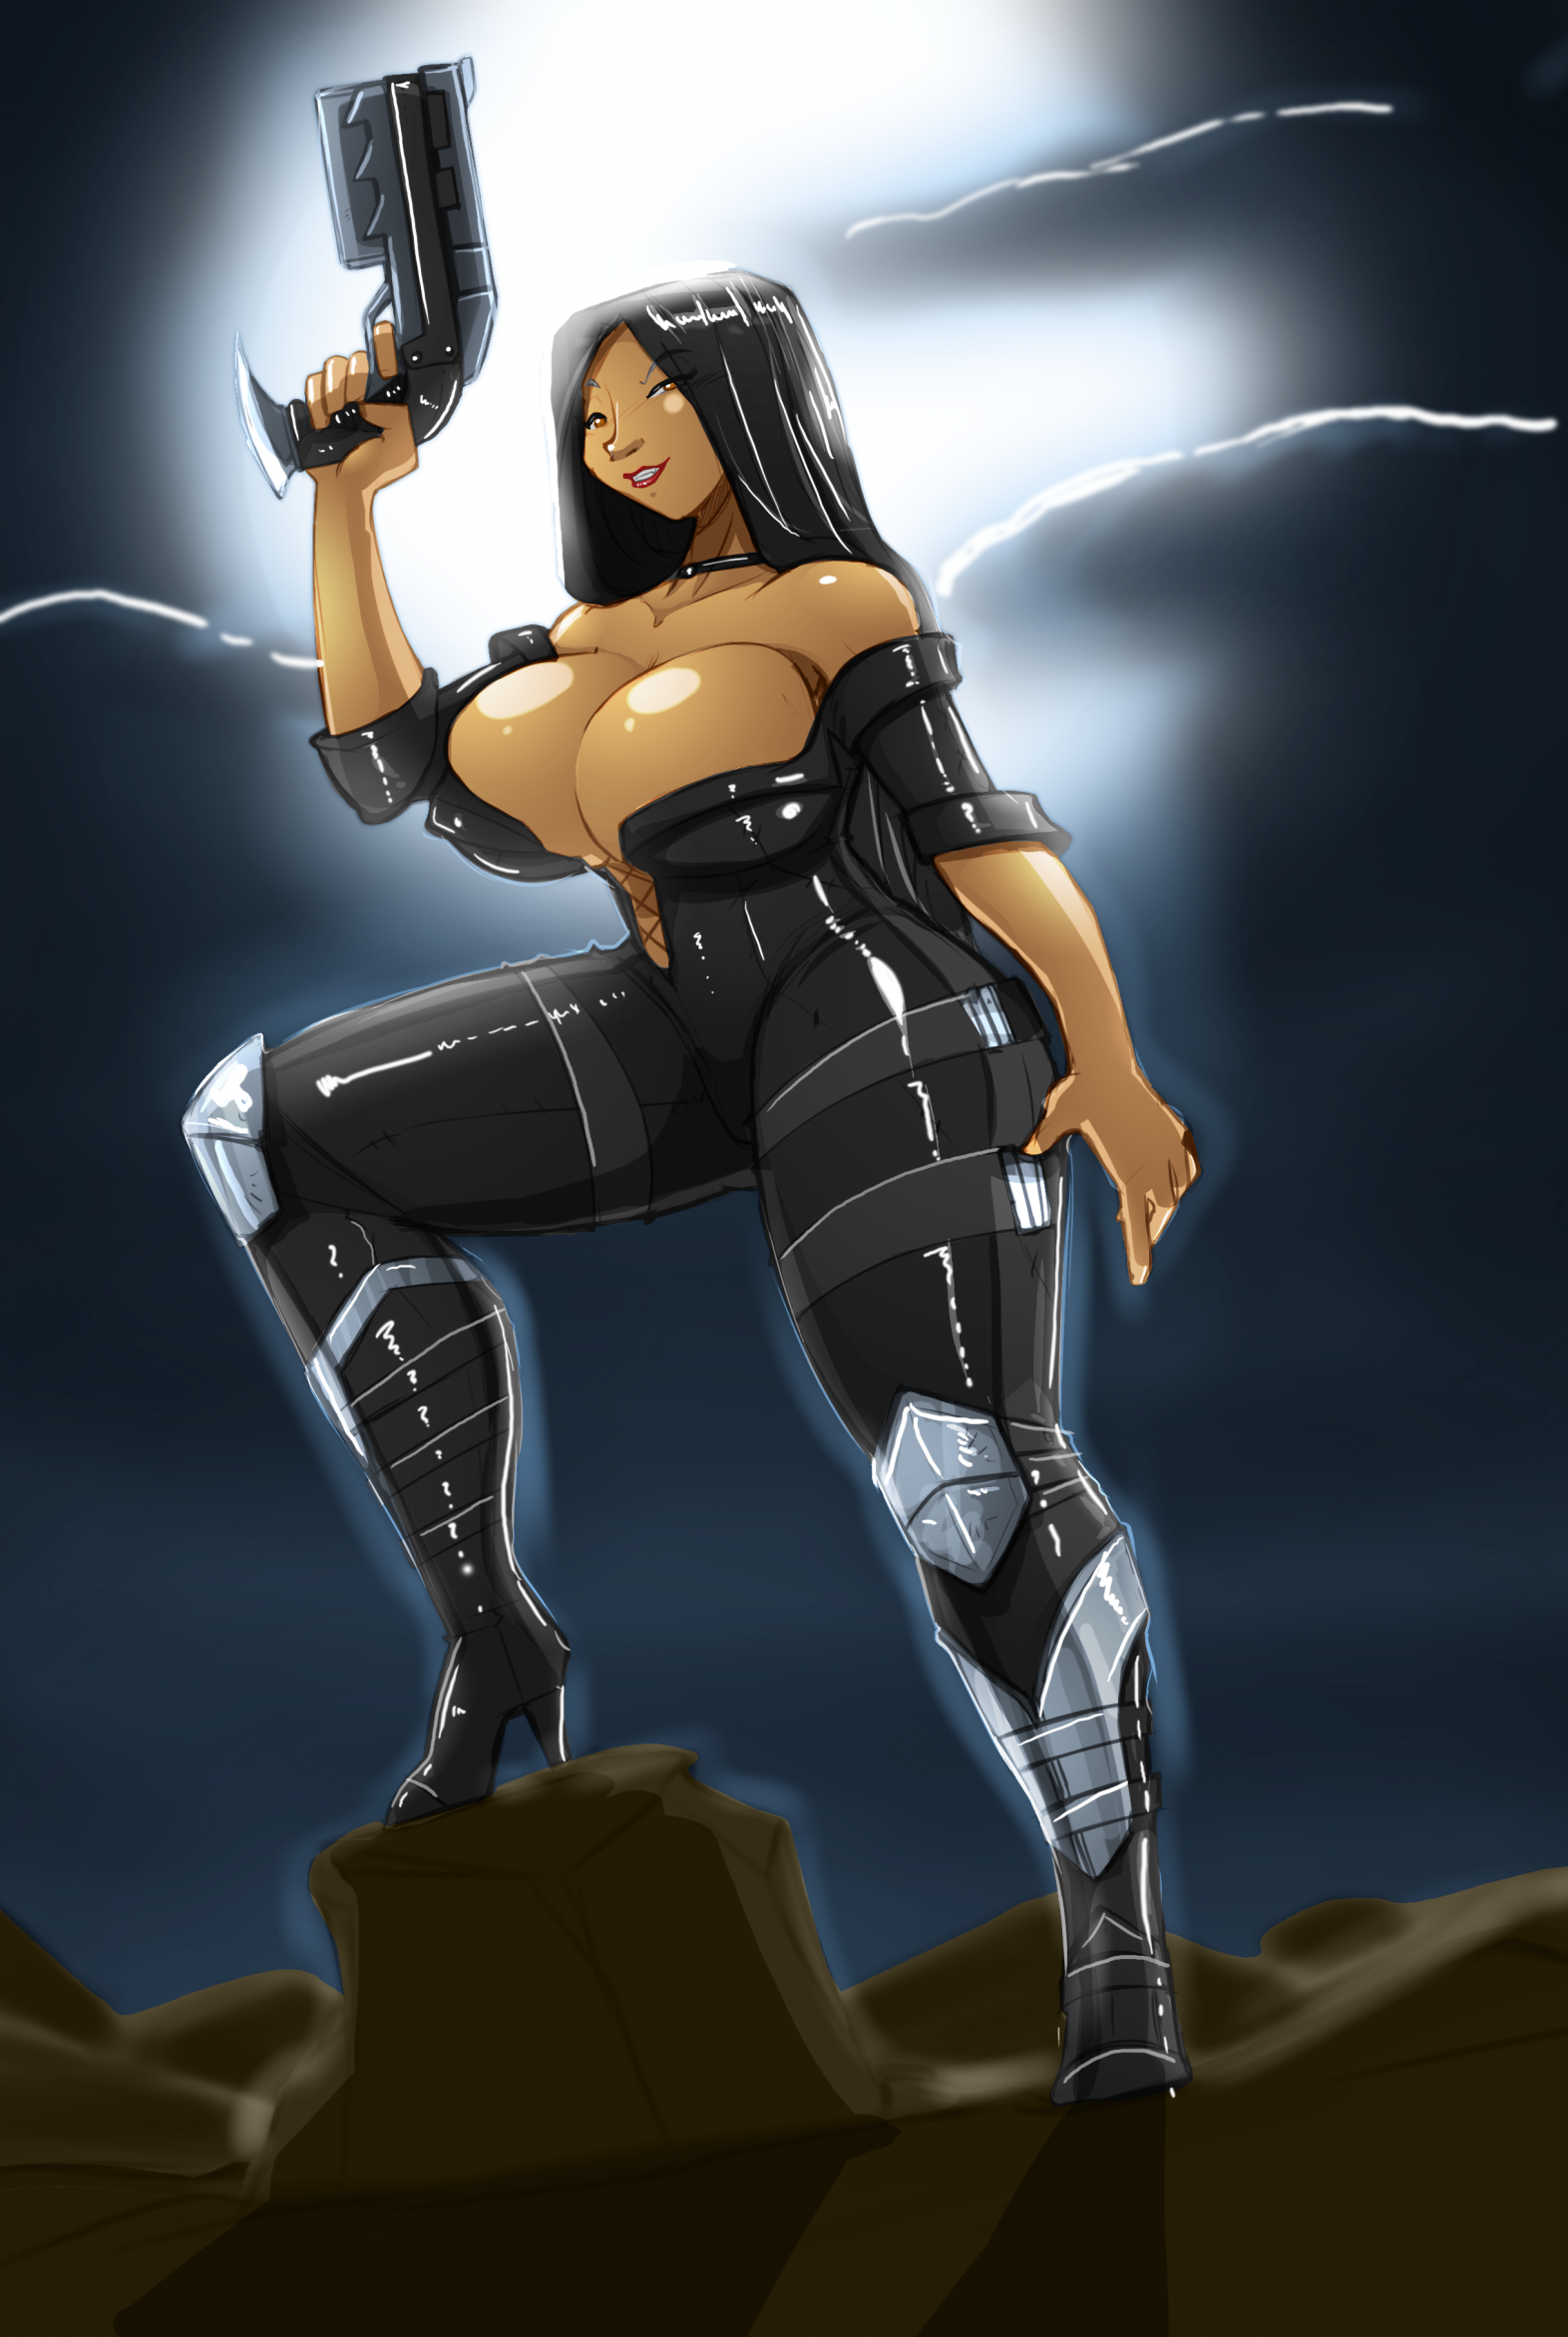 JEStockArt - Supernatural - Shadow Warrior Woman With Dark